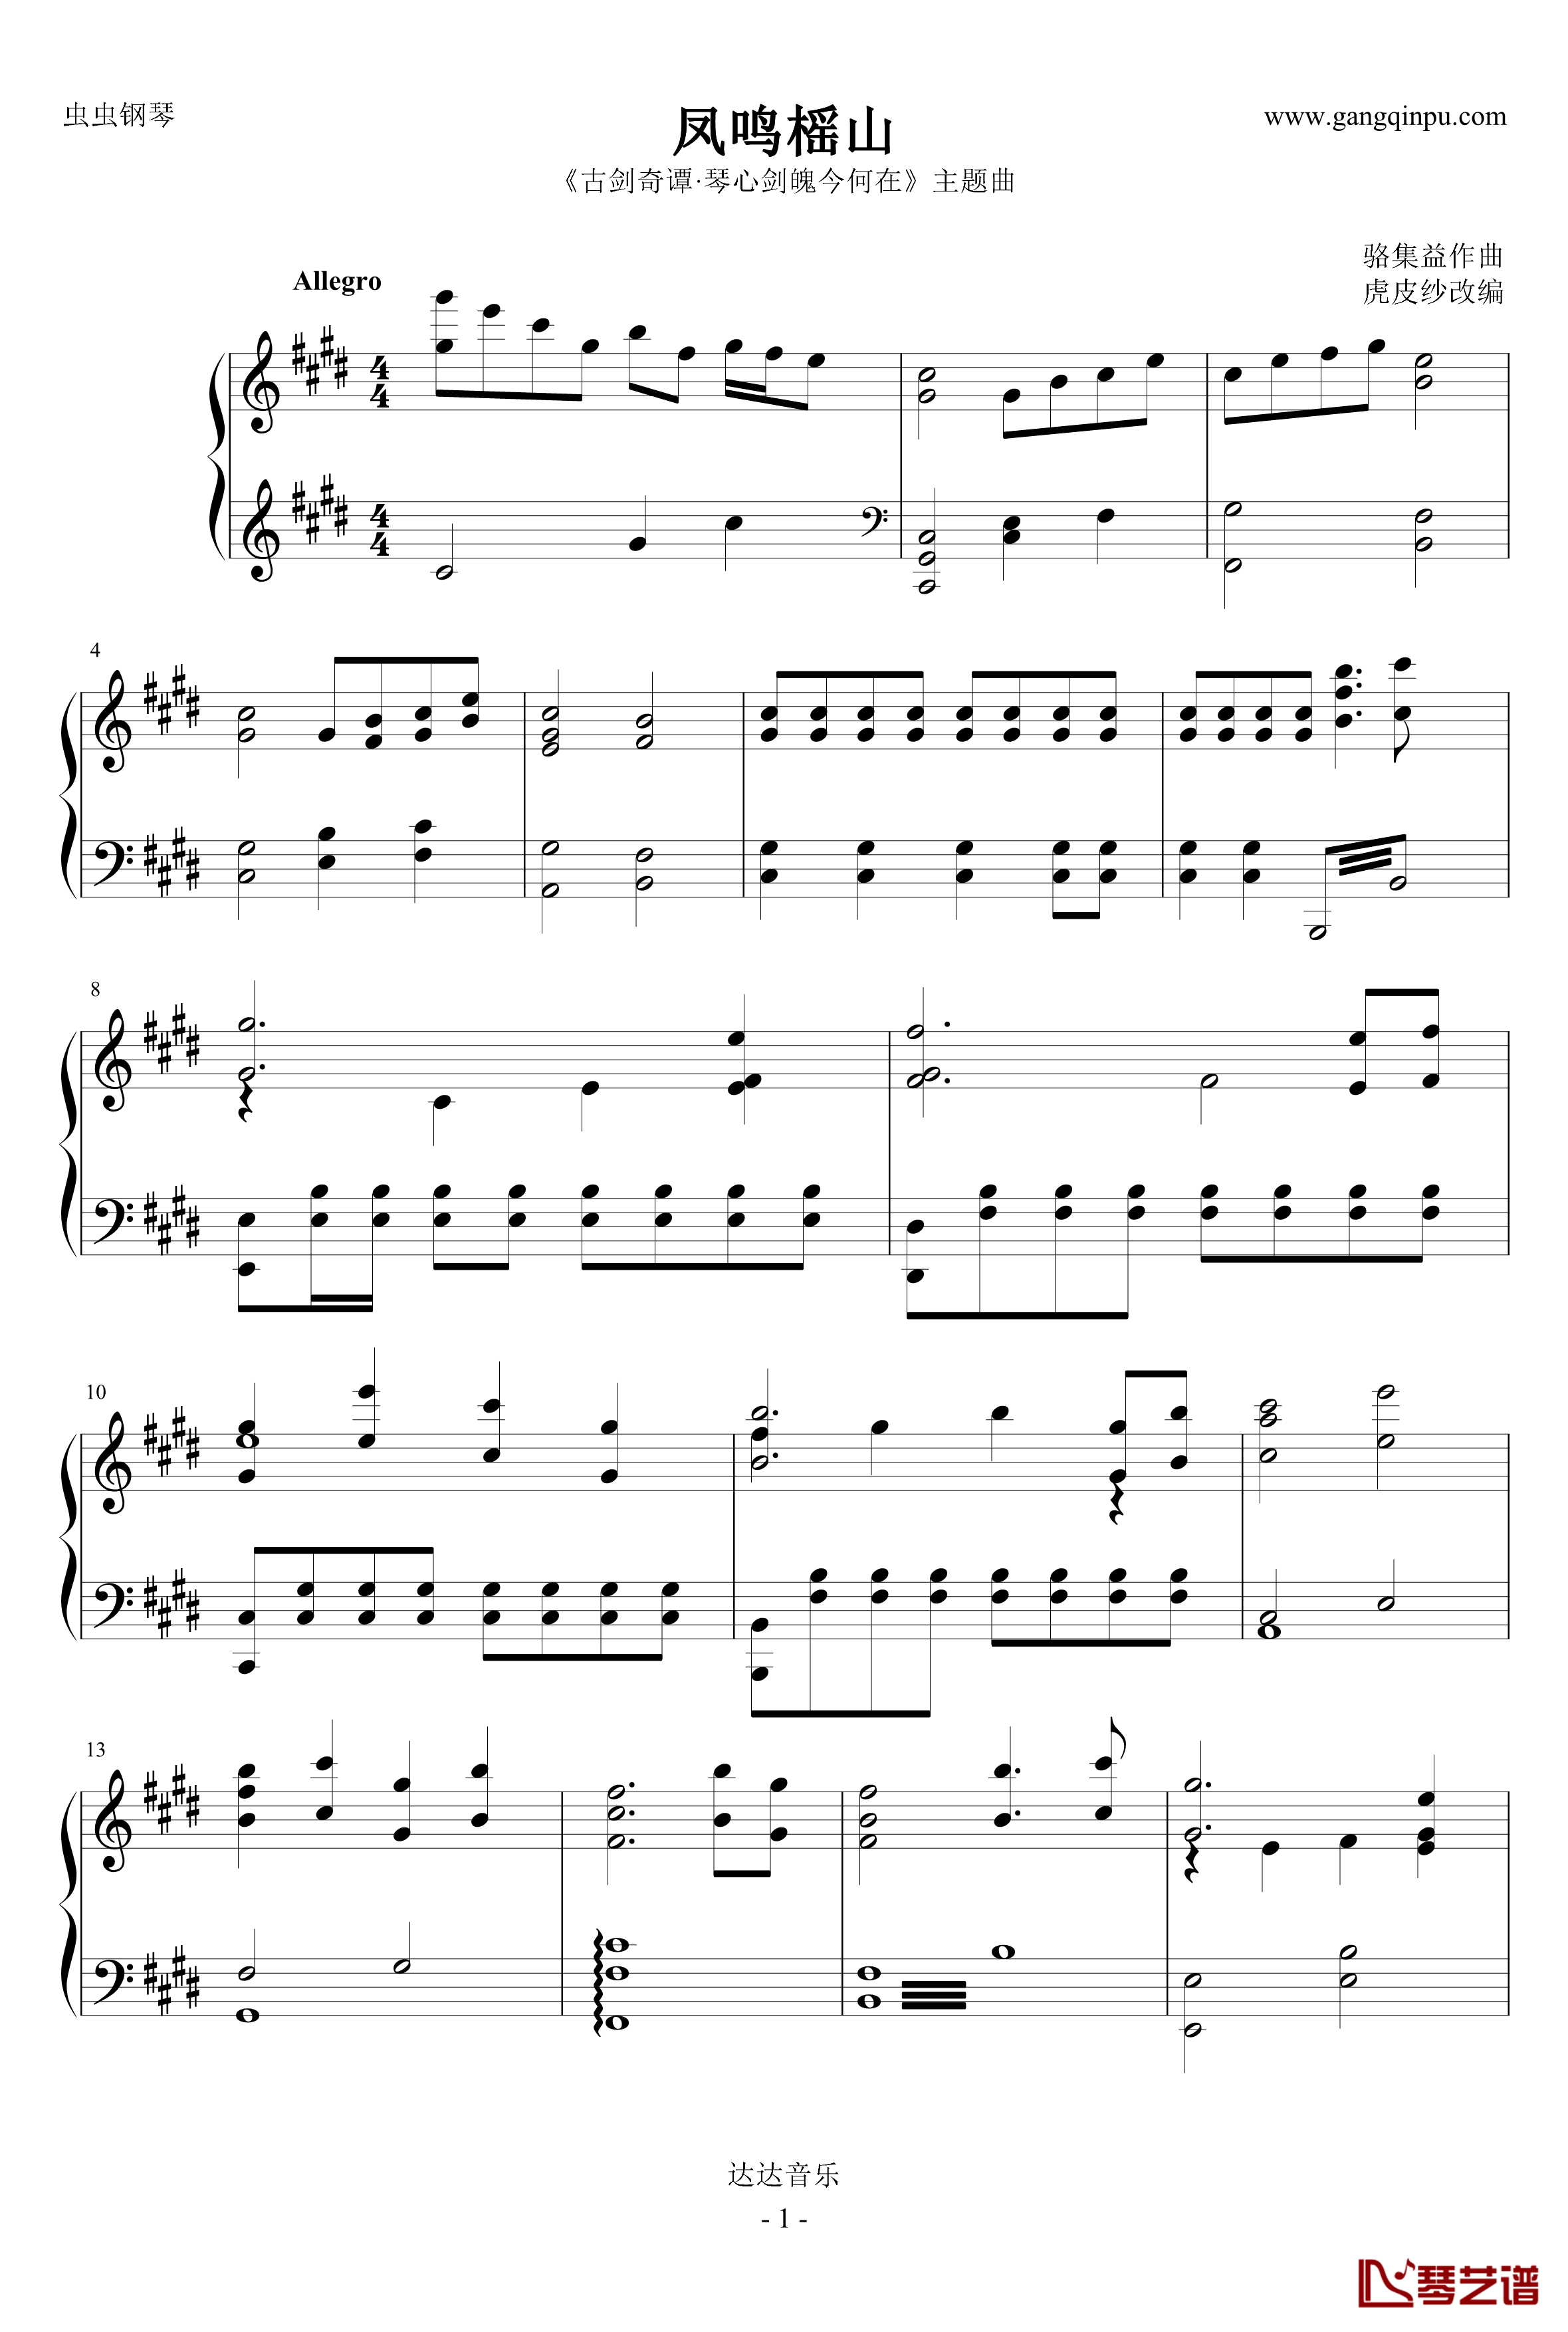 凤鸣榣山钢琴谱-非官方版-古剑奇谭1